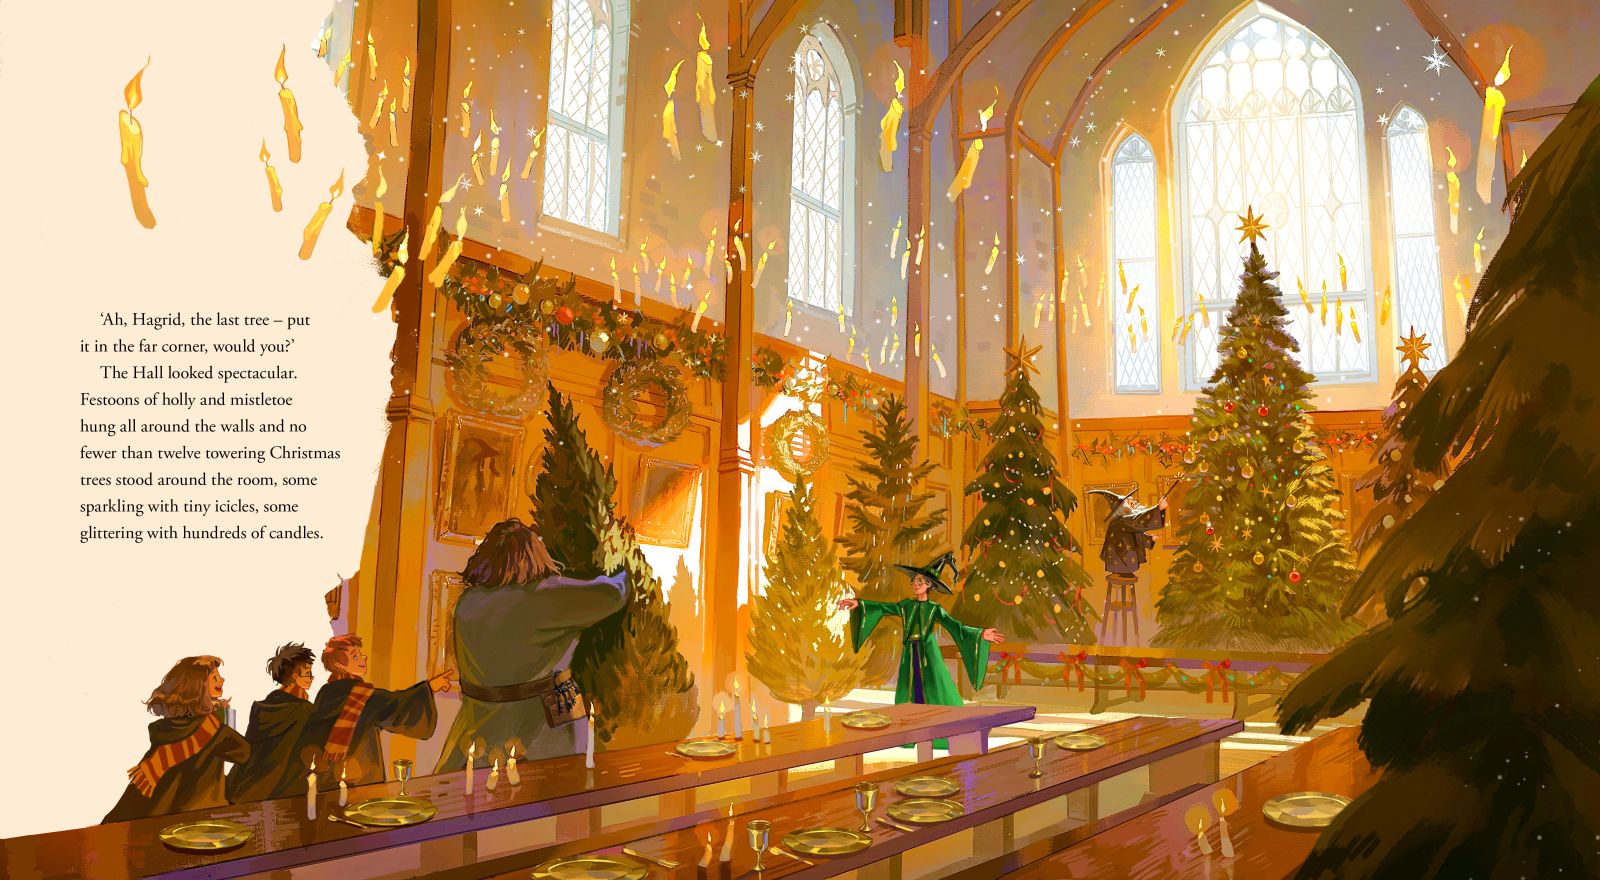 "Christmas at Hogwarts"